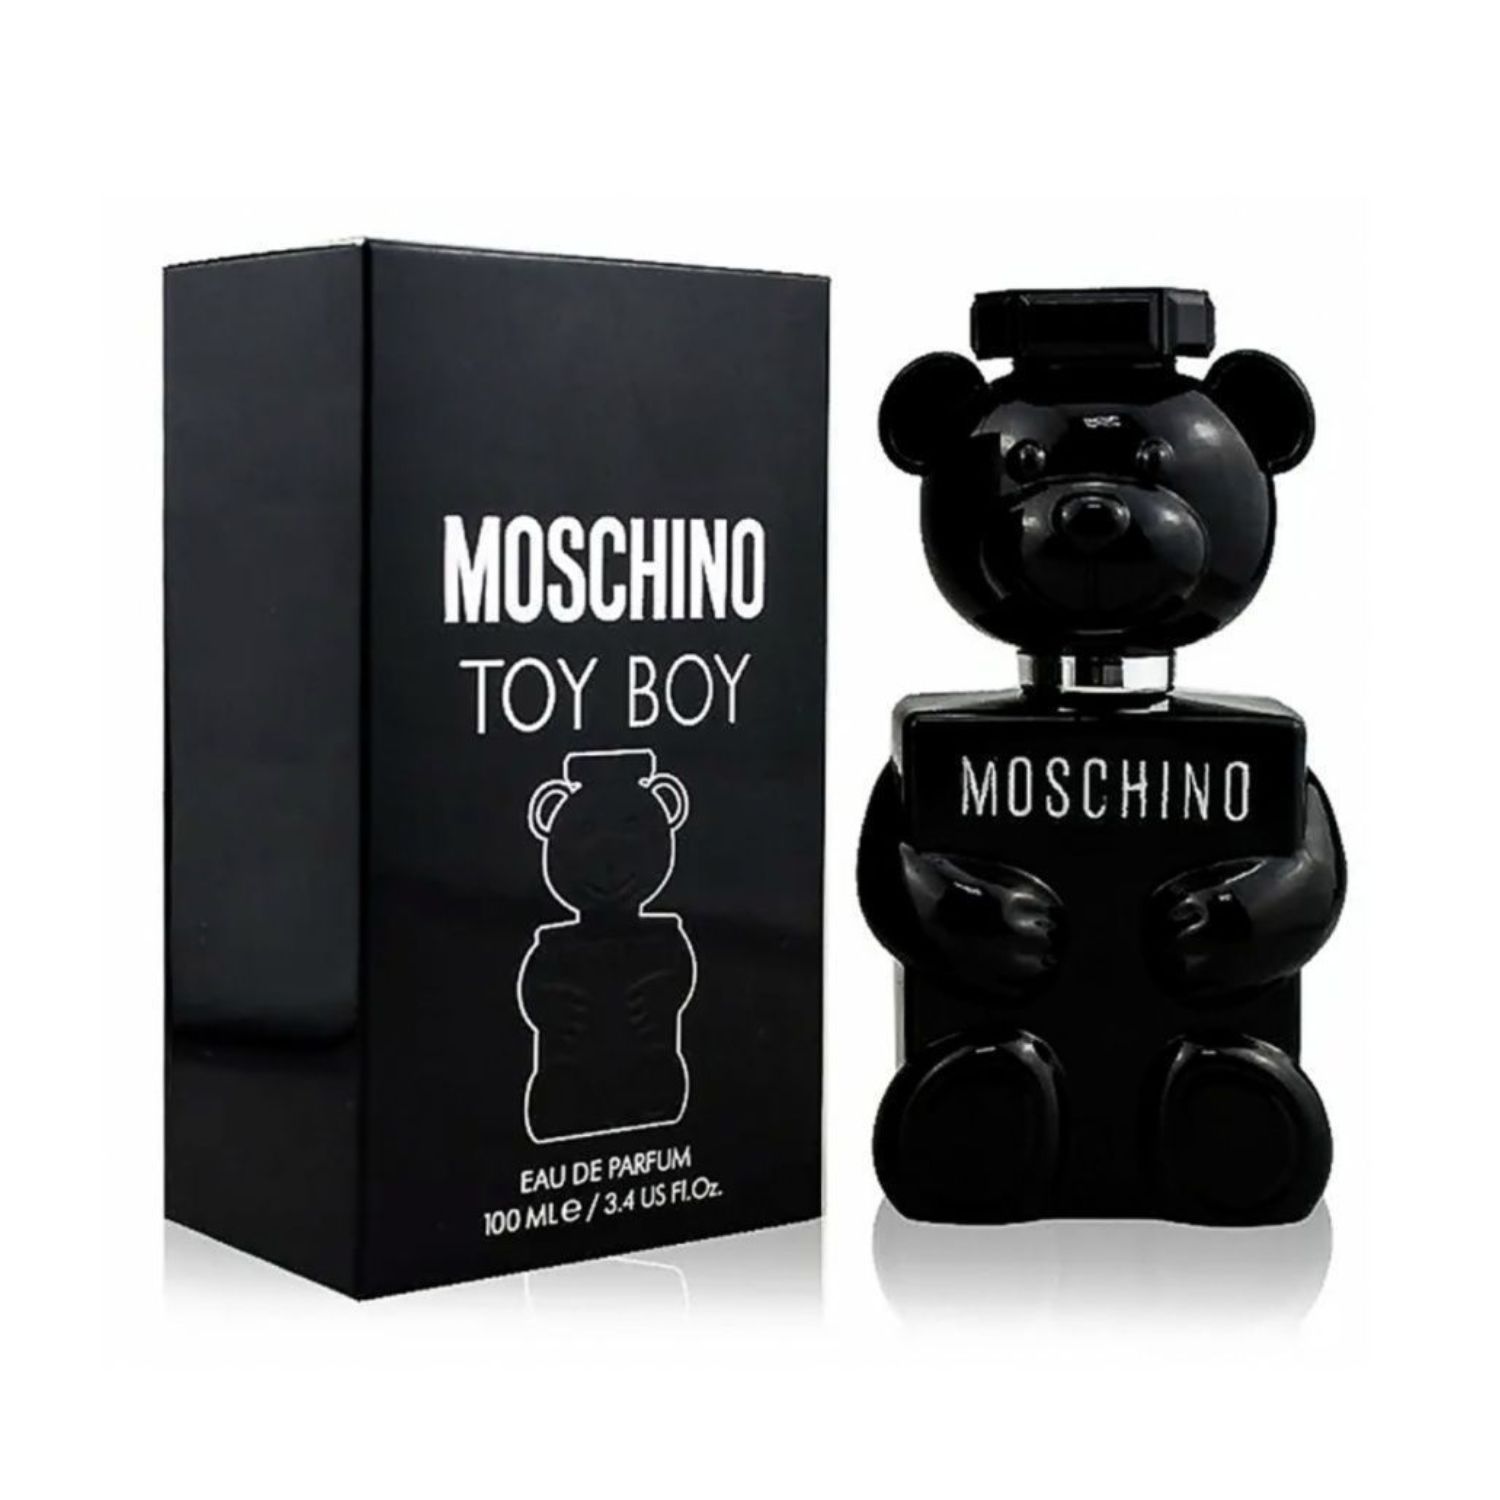 Moschino Toy boy Eau de Parfum. Moschino Toy boy Eau de Parfum 100 ml. Moschino Toy boy 100ml EDP. Moschino Toy boy 2.